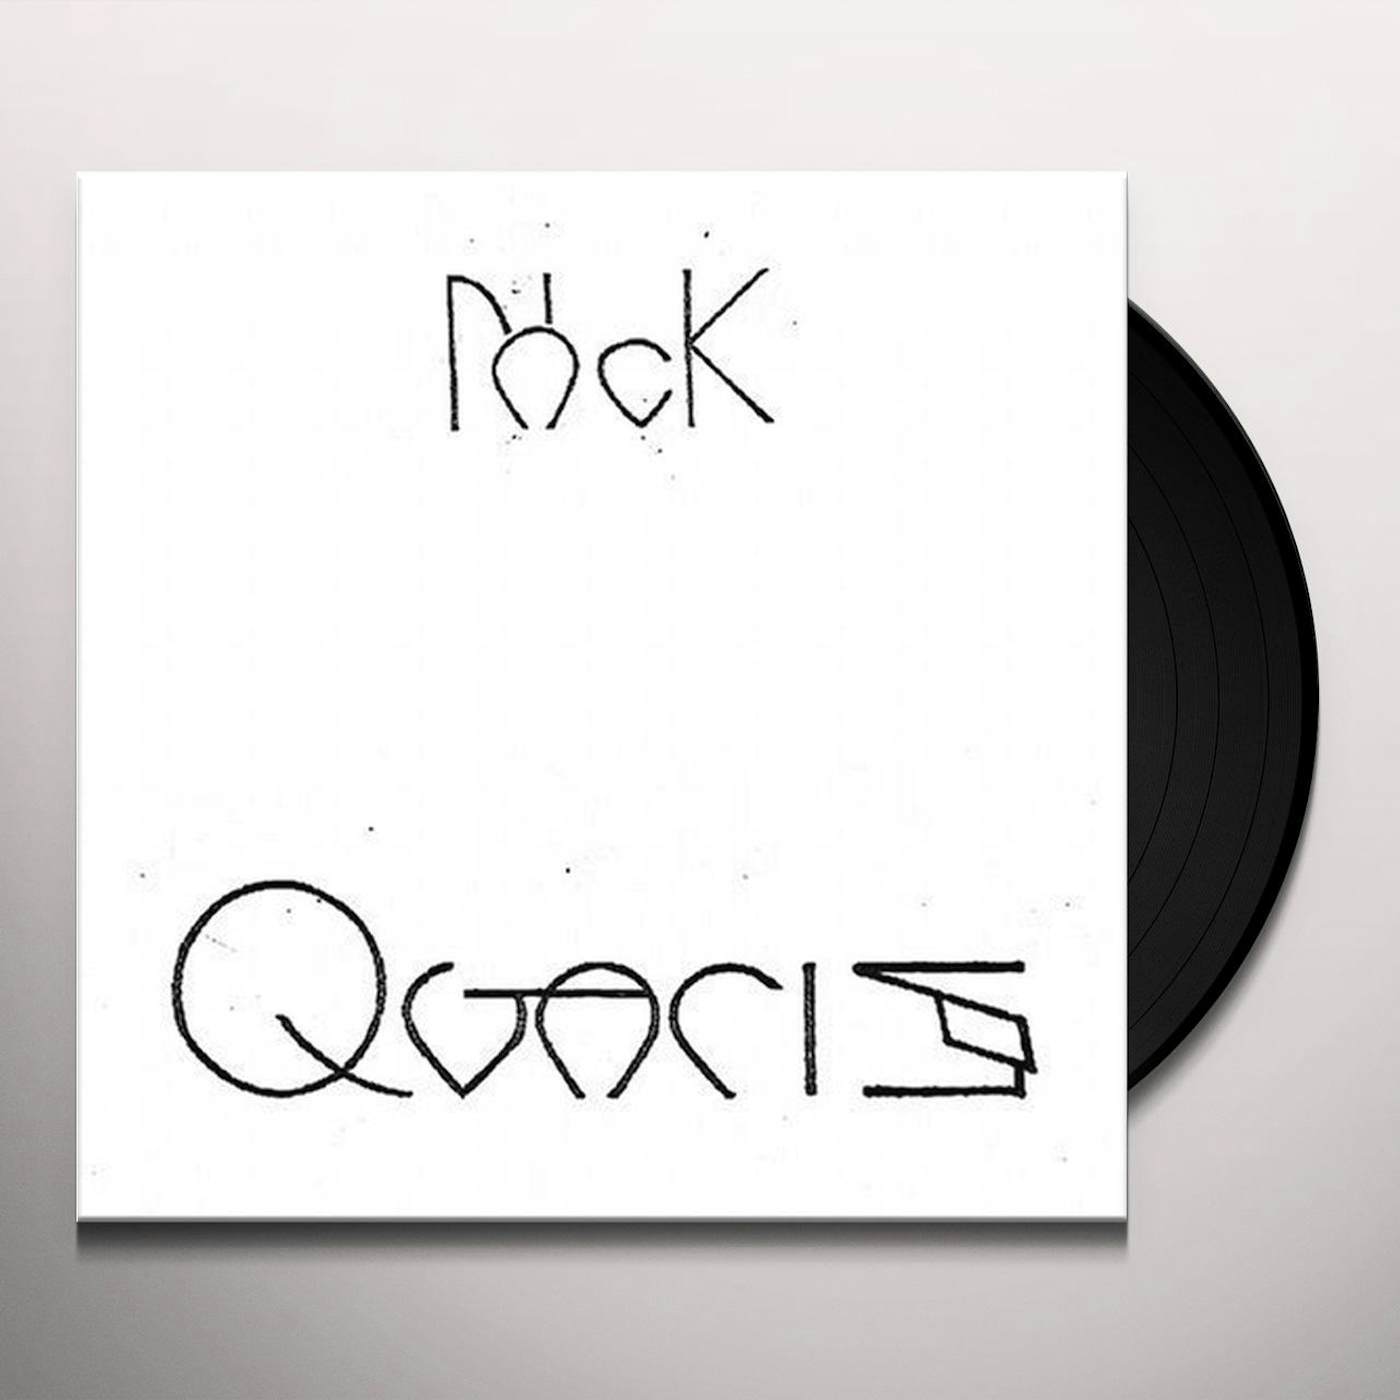 No-Neck Blues Band QVARIS Vinyl Record